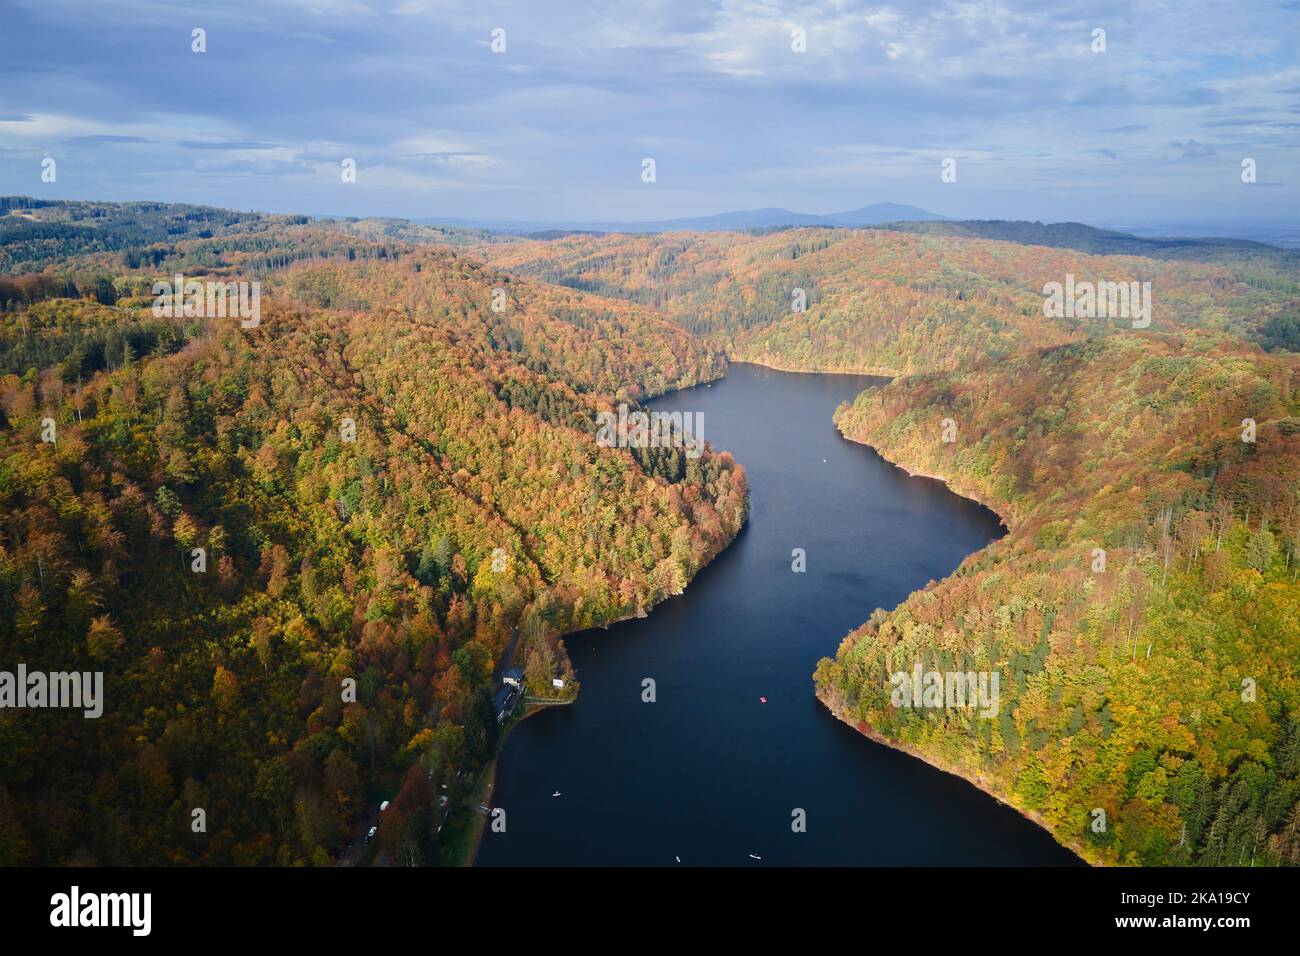 Vista aerea dall'alto di un incredibile paesaggio autunnale con montagne coperte di foresta e fiume. Splendido paesaggio naturale durante la stagione autunnale Foto Stock